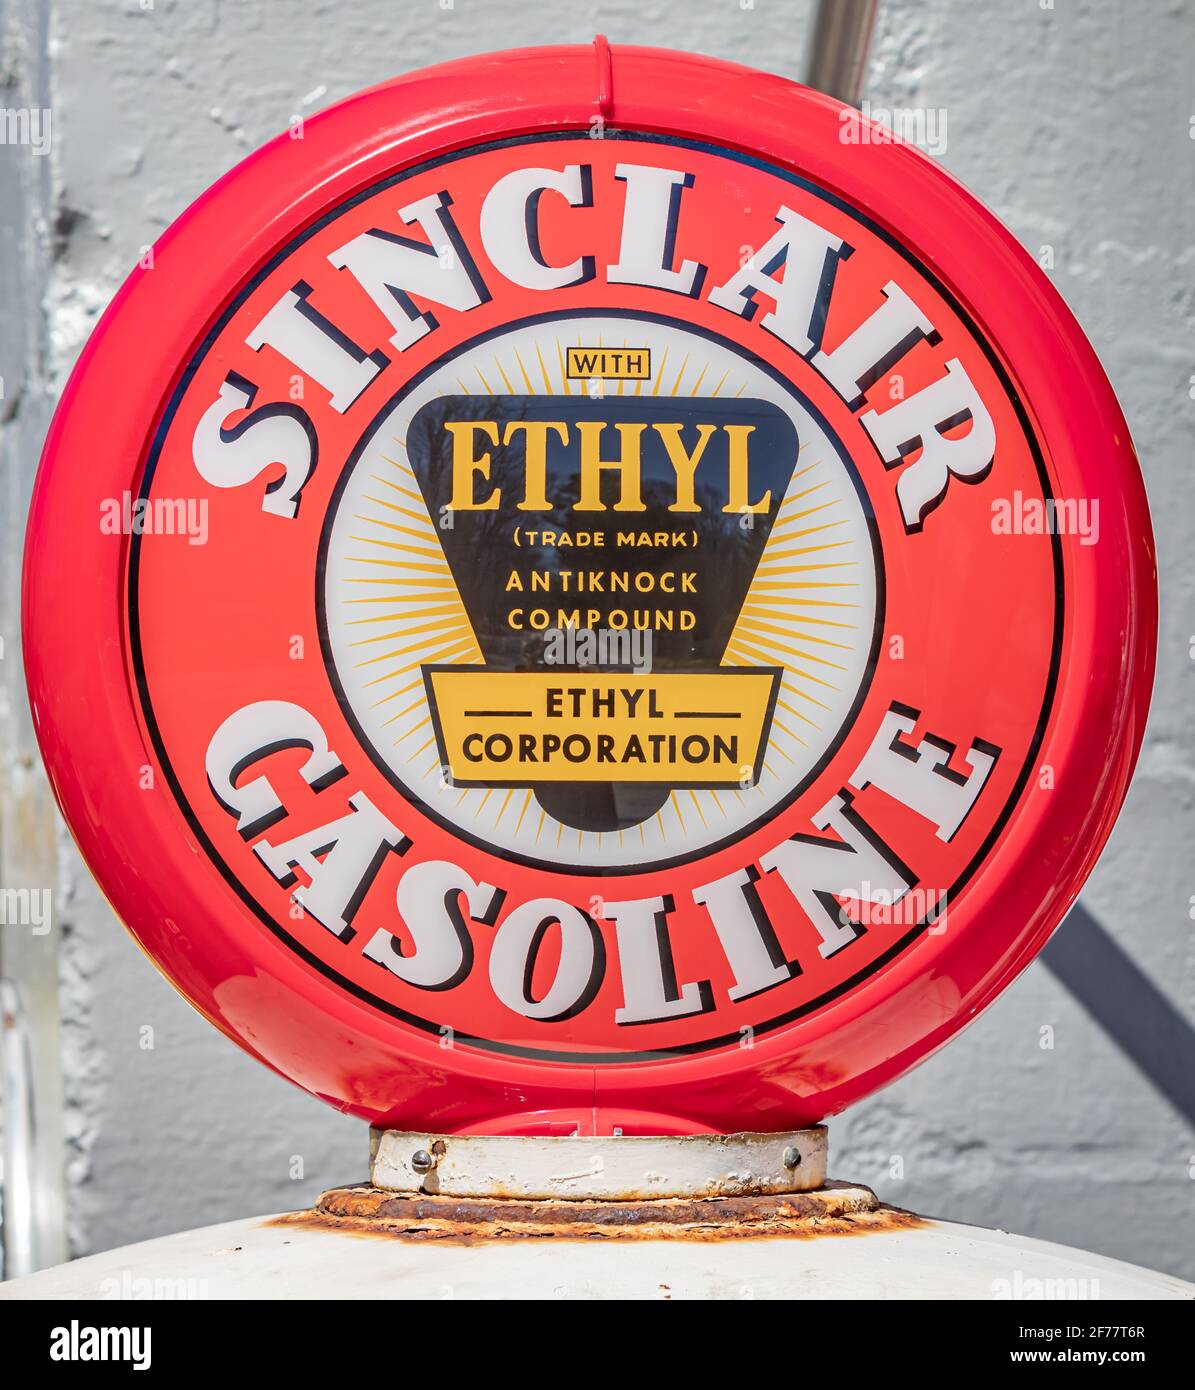 Detailbild einer Sinclair Benzinpumpe Stockfoto